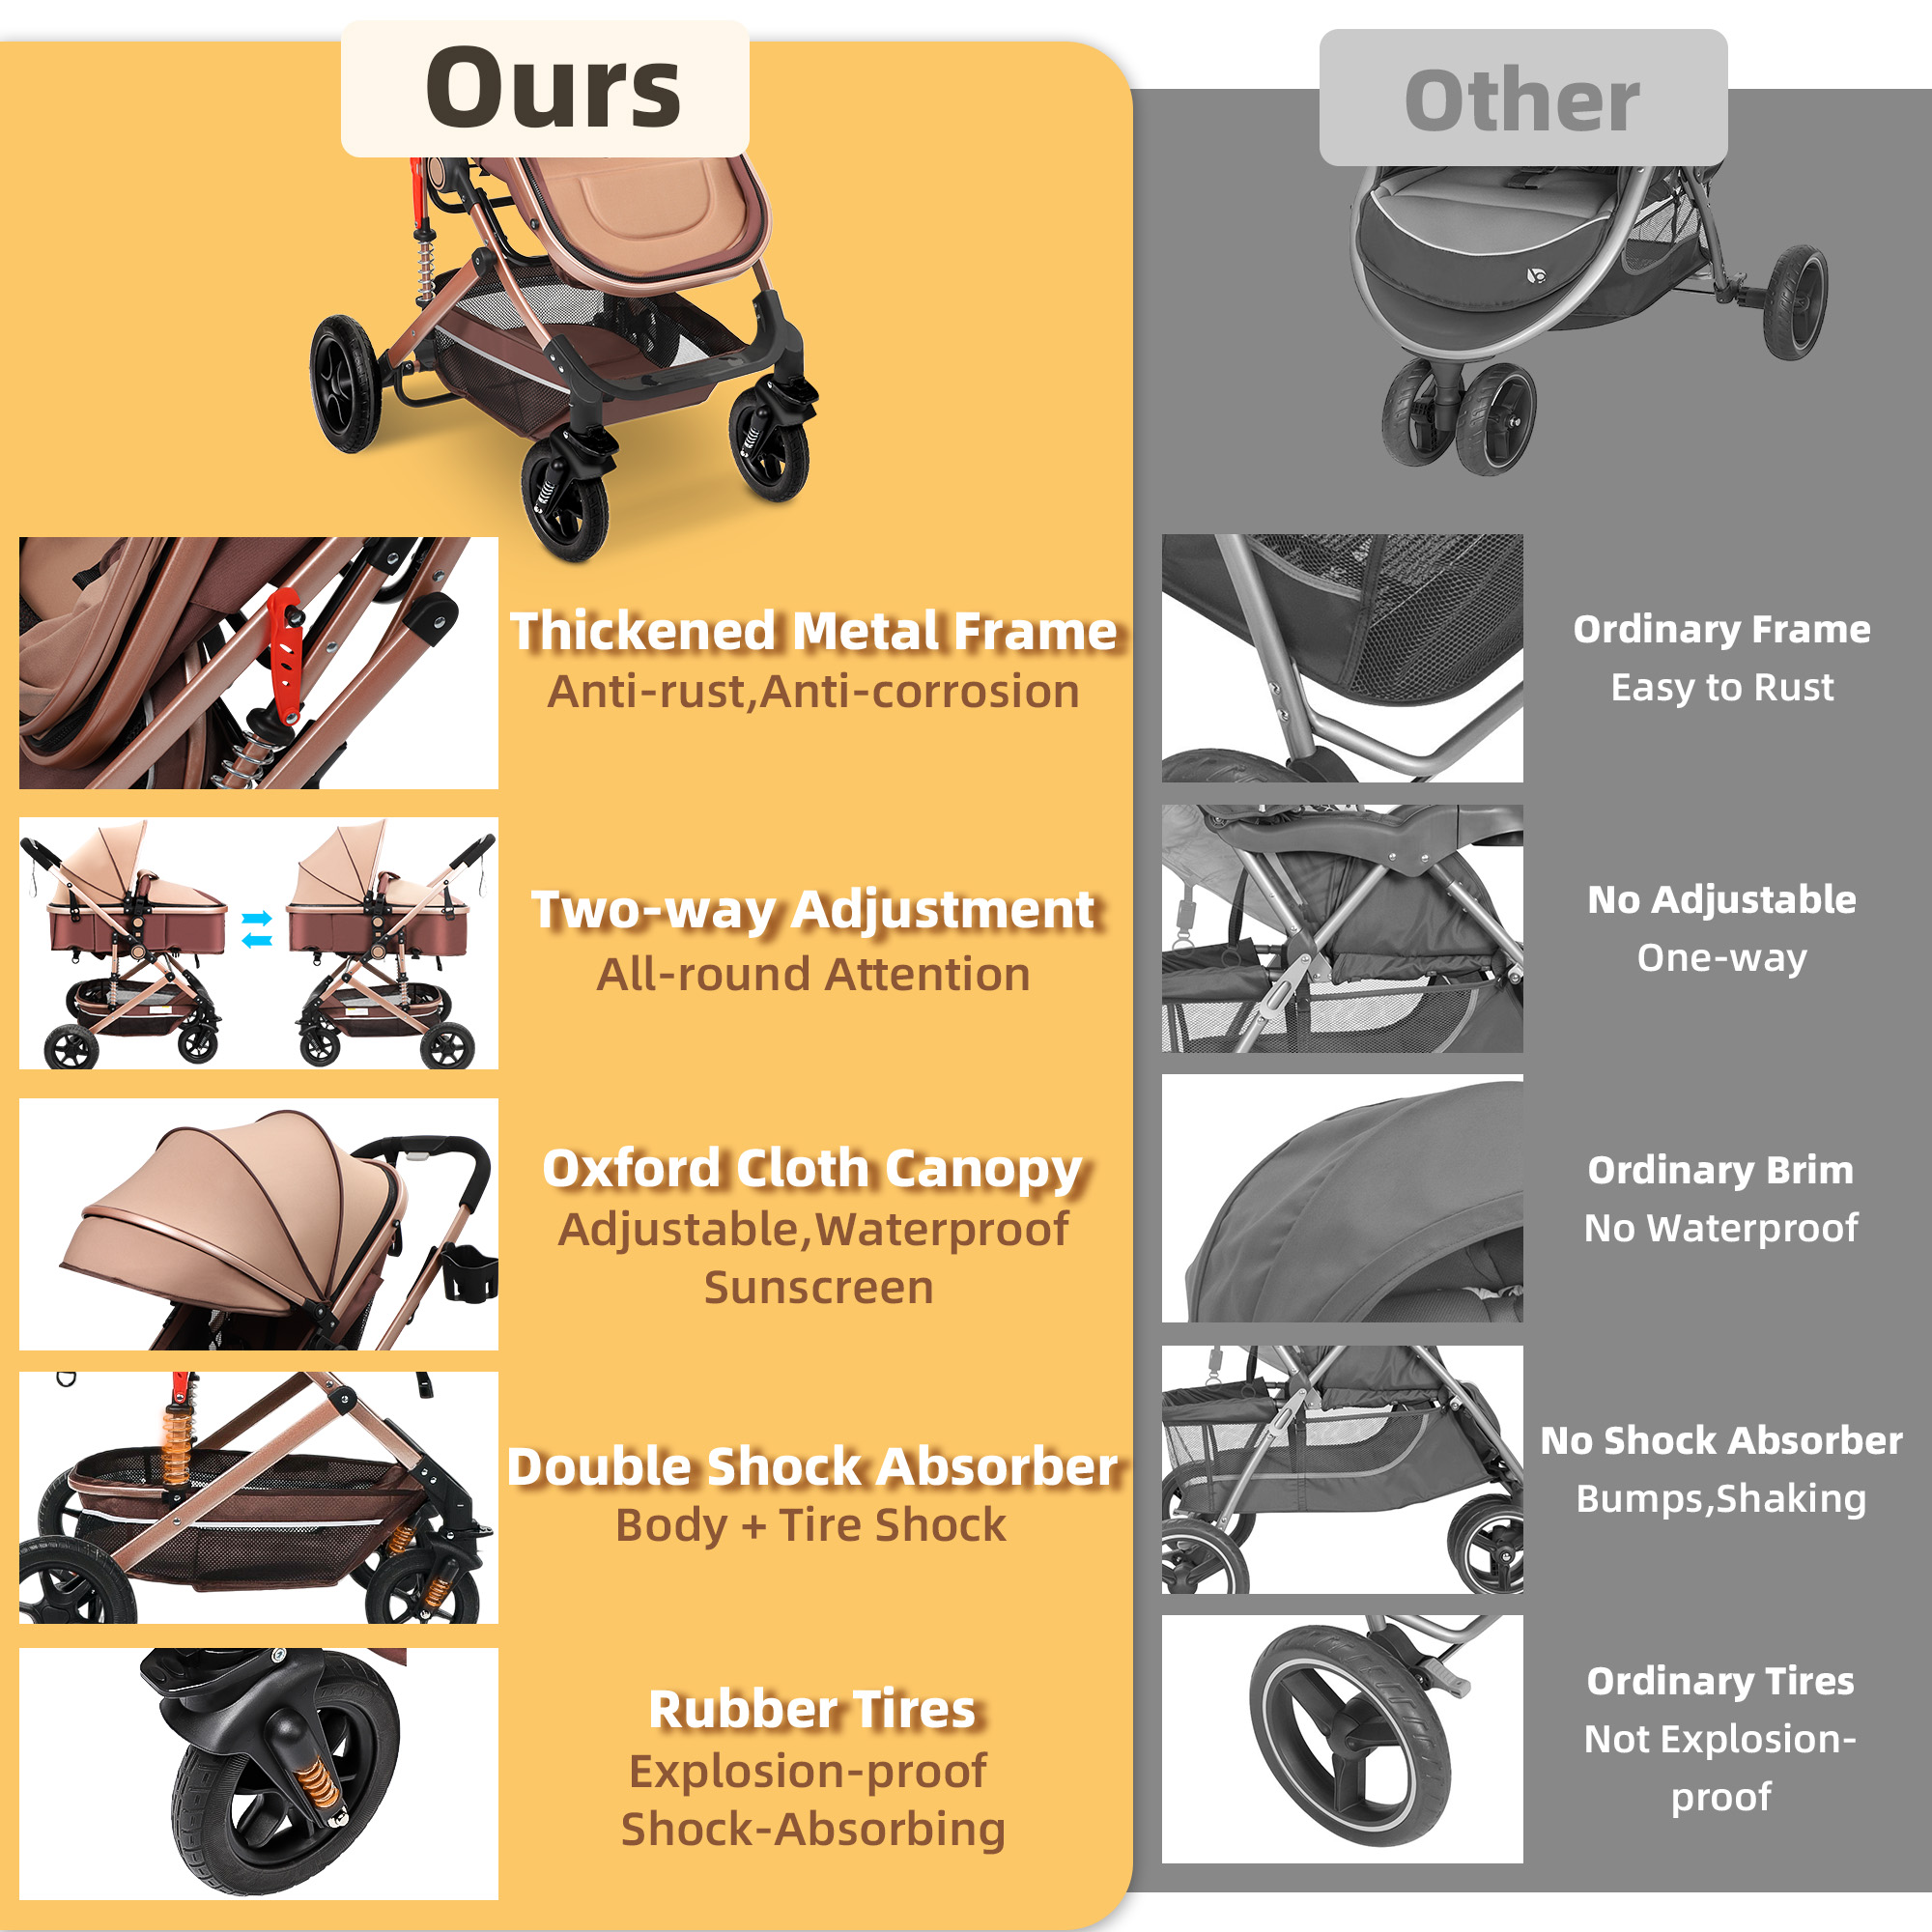 Vomeast Baby Stroller, Foldable Baby Stroller Reversible Bassinet, Travel Stroller for Newborn Baby, Khaki - image 4 of 10